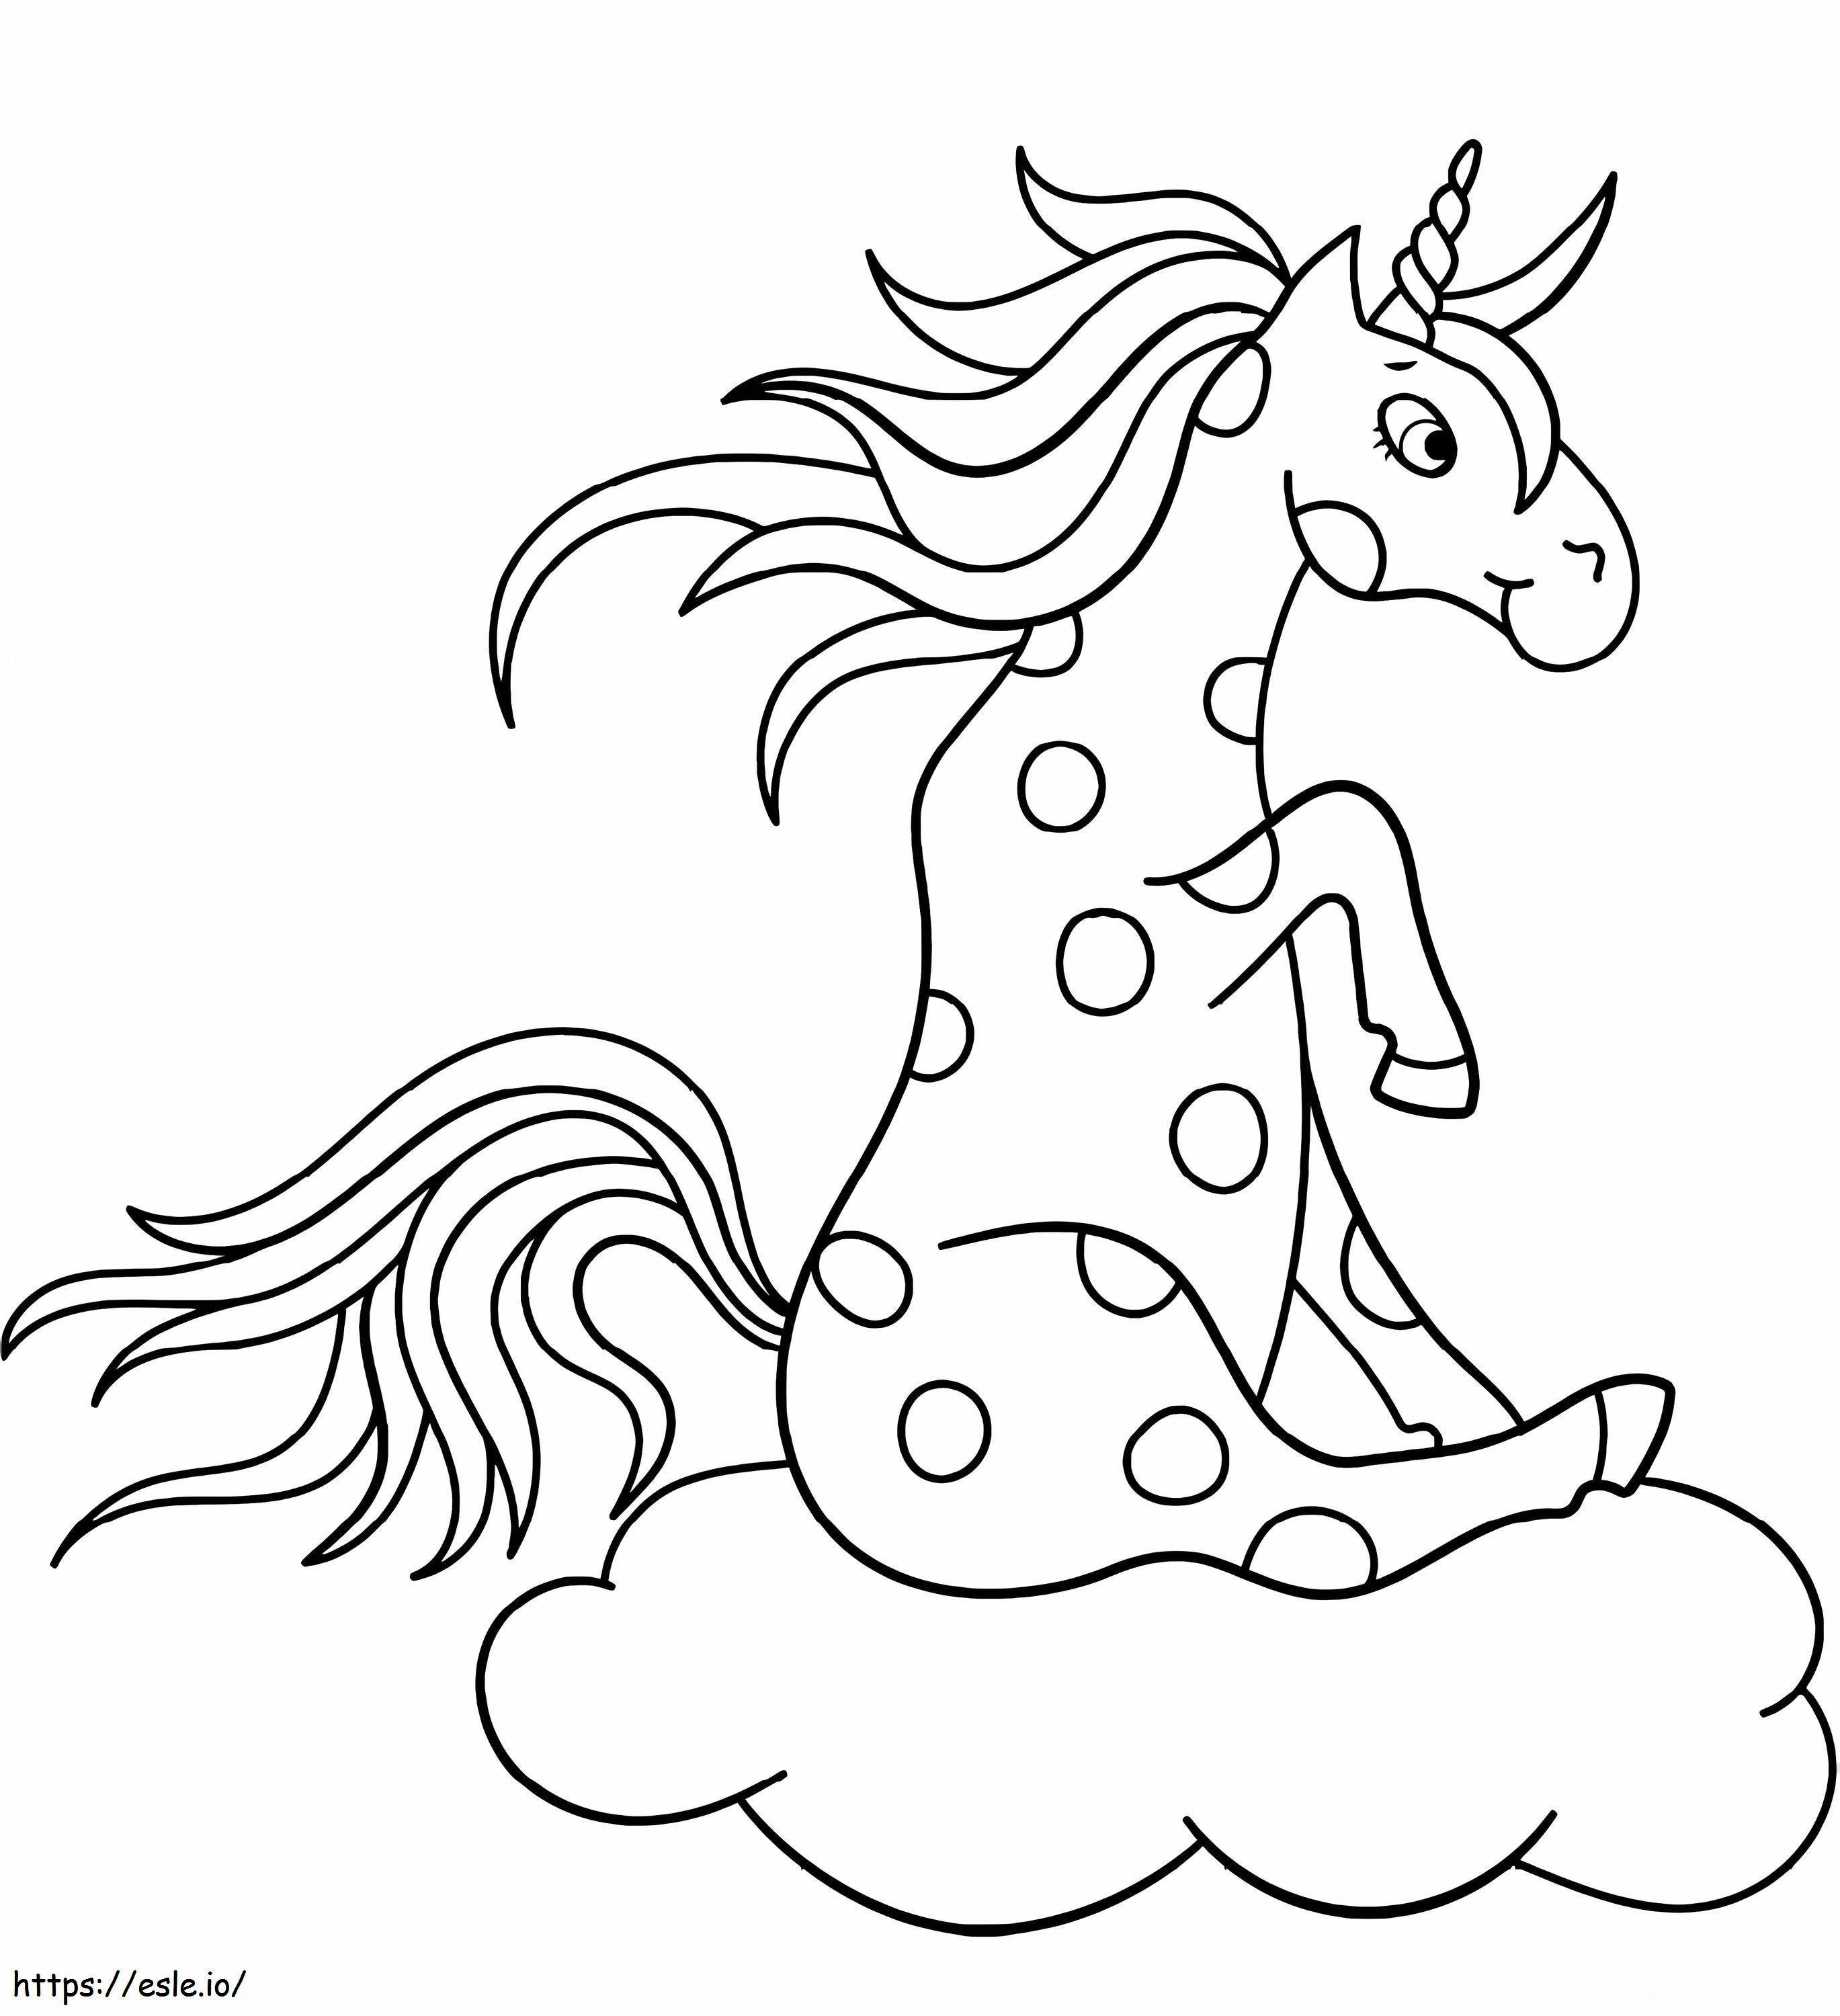 Unicorno seduto sulla nuvola da colorare